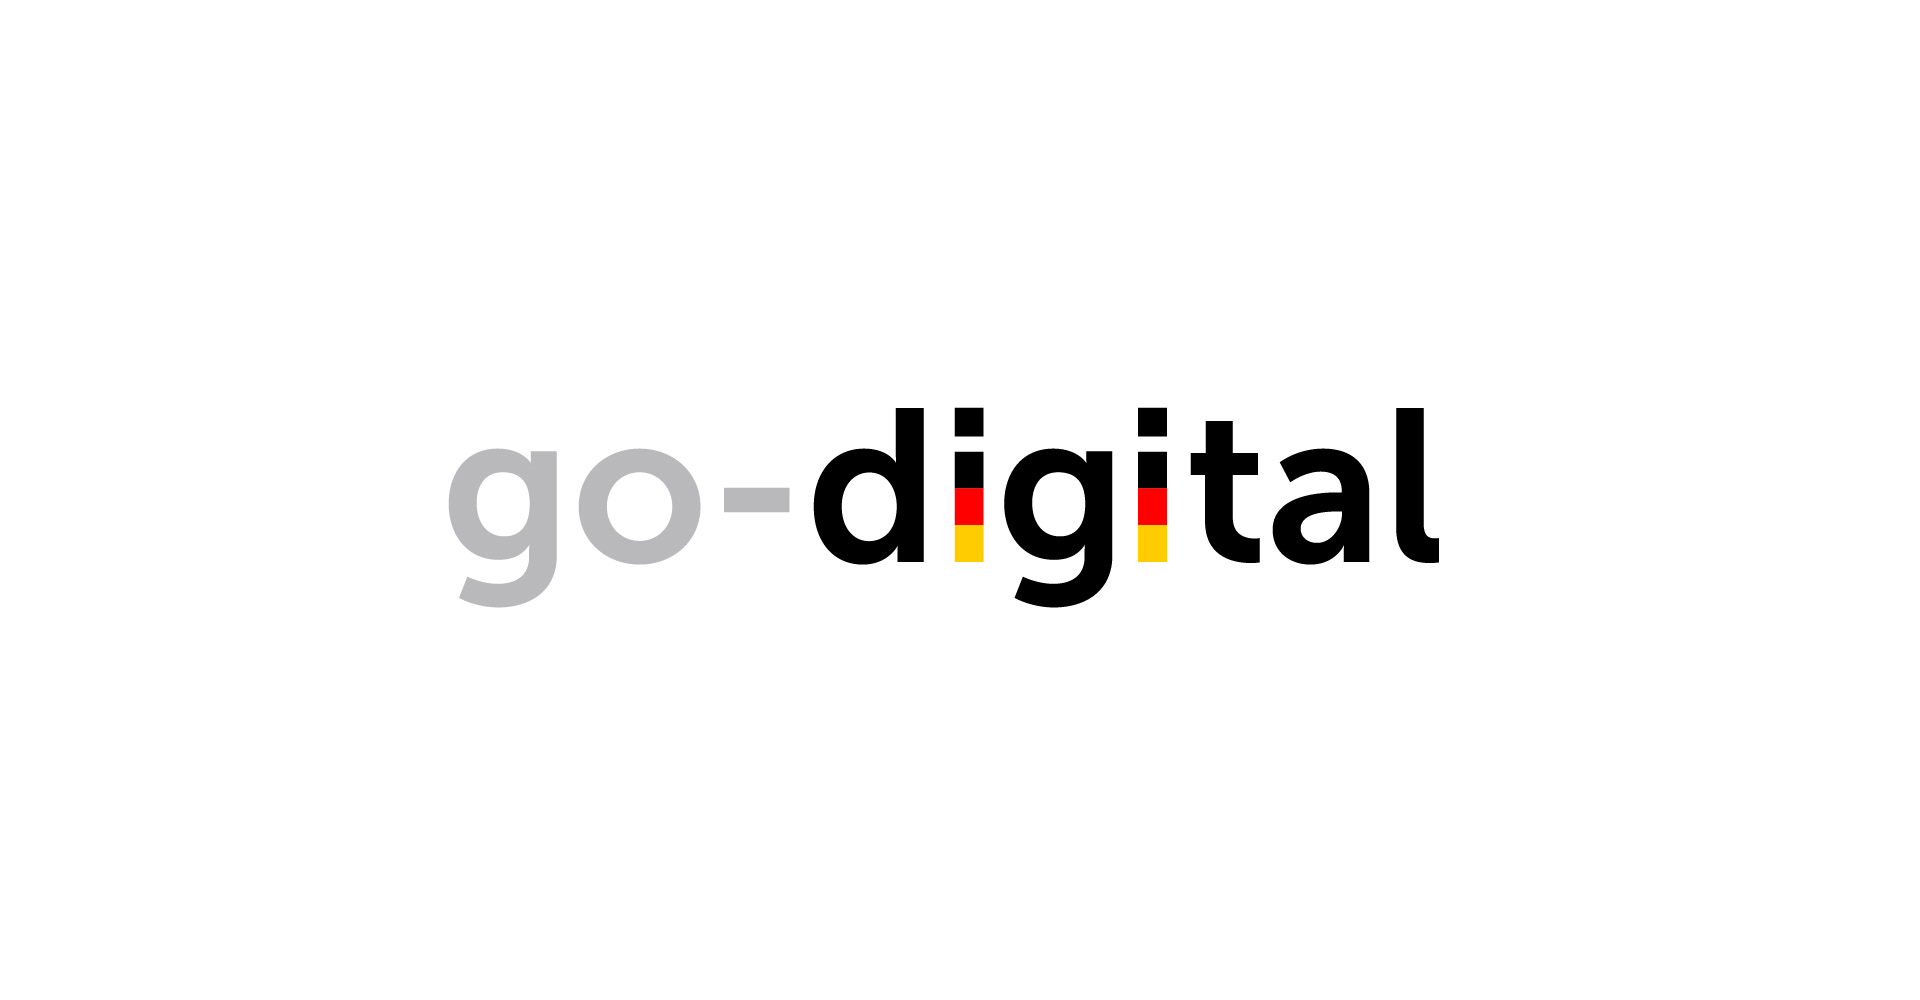 8works für Förderprogramm „go-digital“ des Bundesministeriums für Wirtschaft und Energie autorisiert